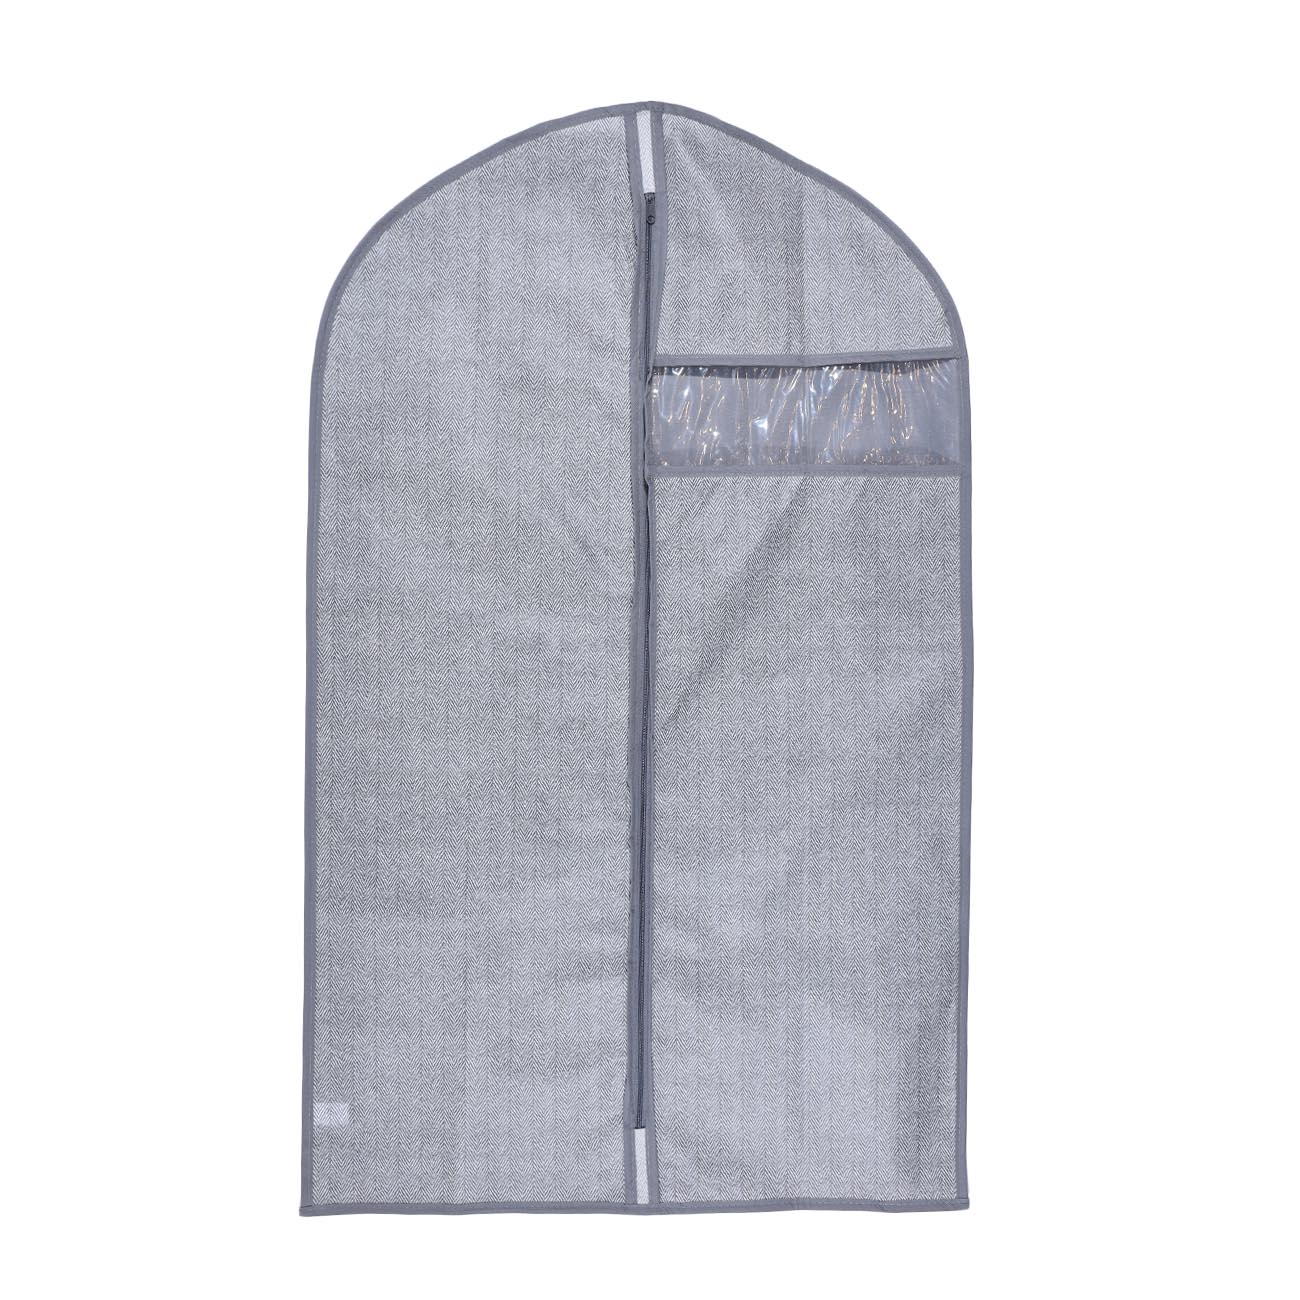 Чехол для одежды, 60х100 см, текстиль/ПВХ, серый, Pedant new изображение № 2